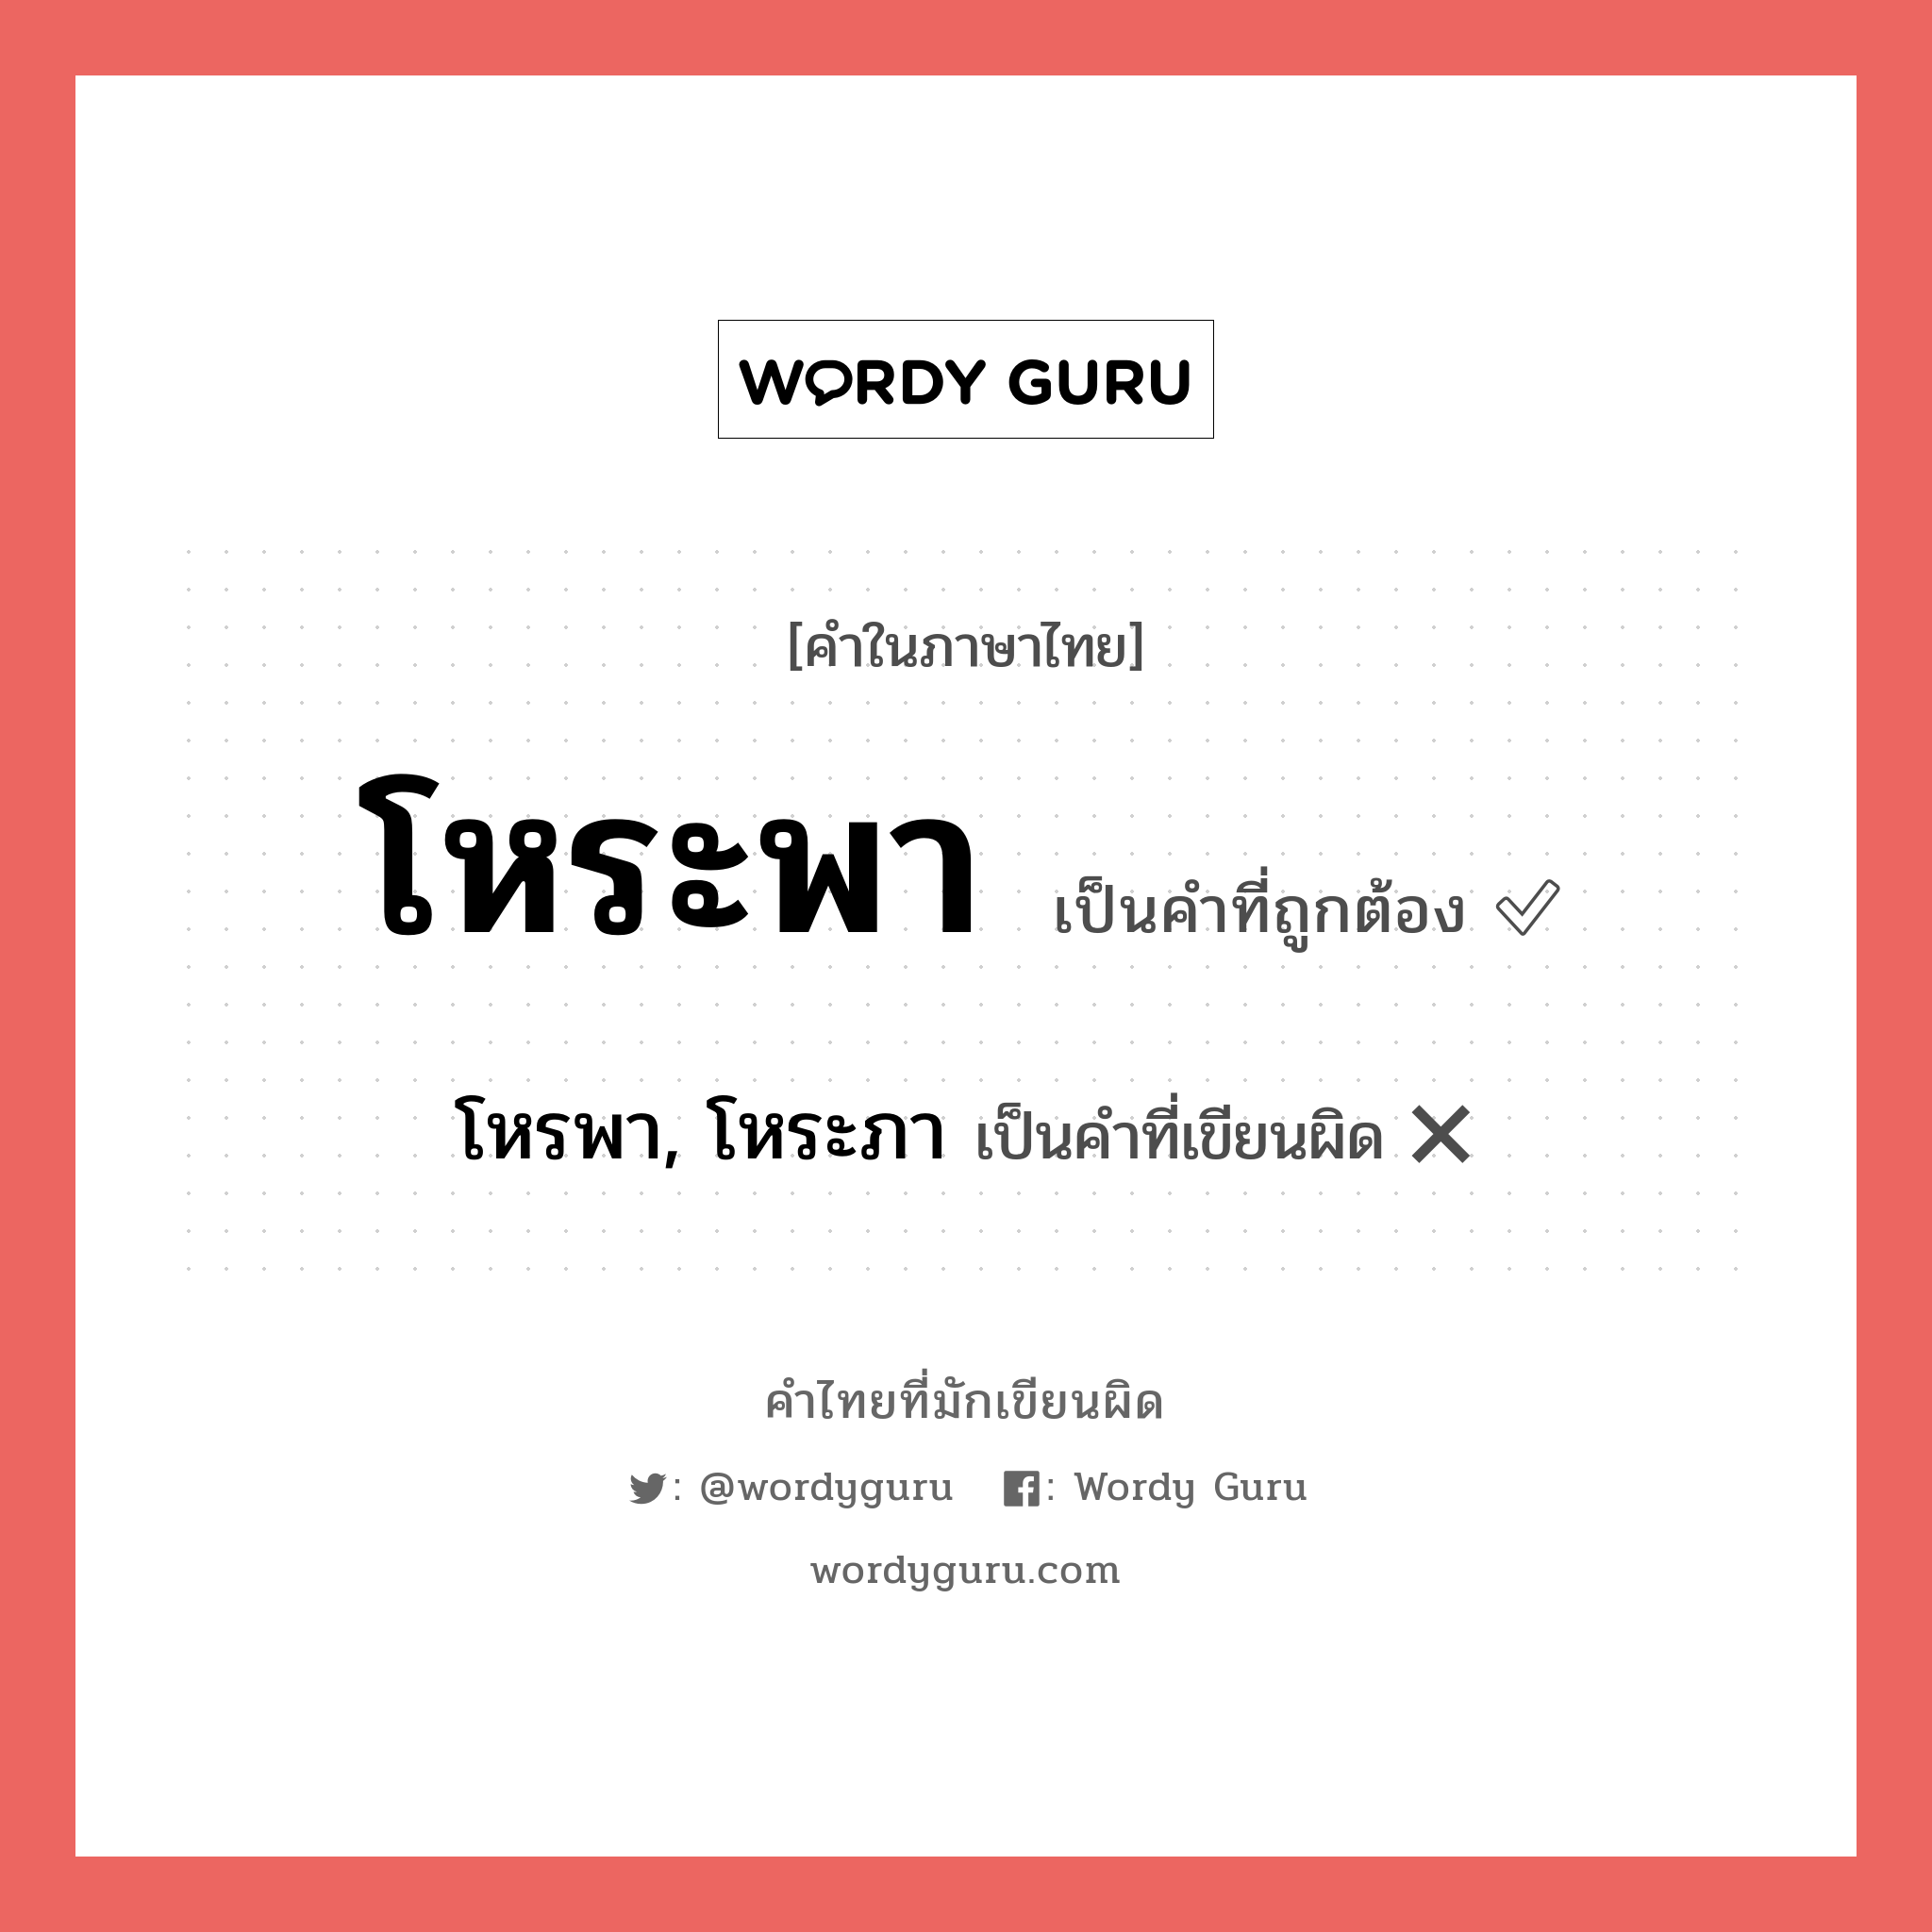 โหรพา, โหระภา หรือ โหระพา คำไหนเขียนถูก?, คำในภาษาไทยที่มักเขียนผิด โหรพา, โหระภา คำที่ผิด ❌ โหระพา